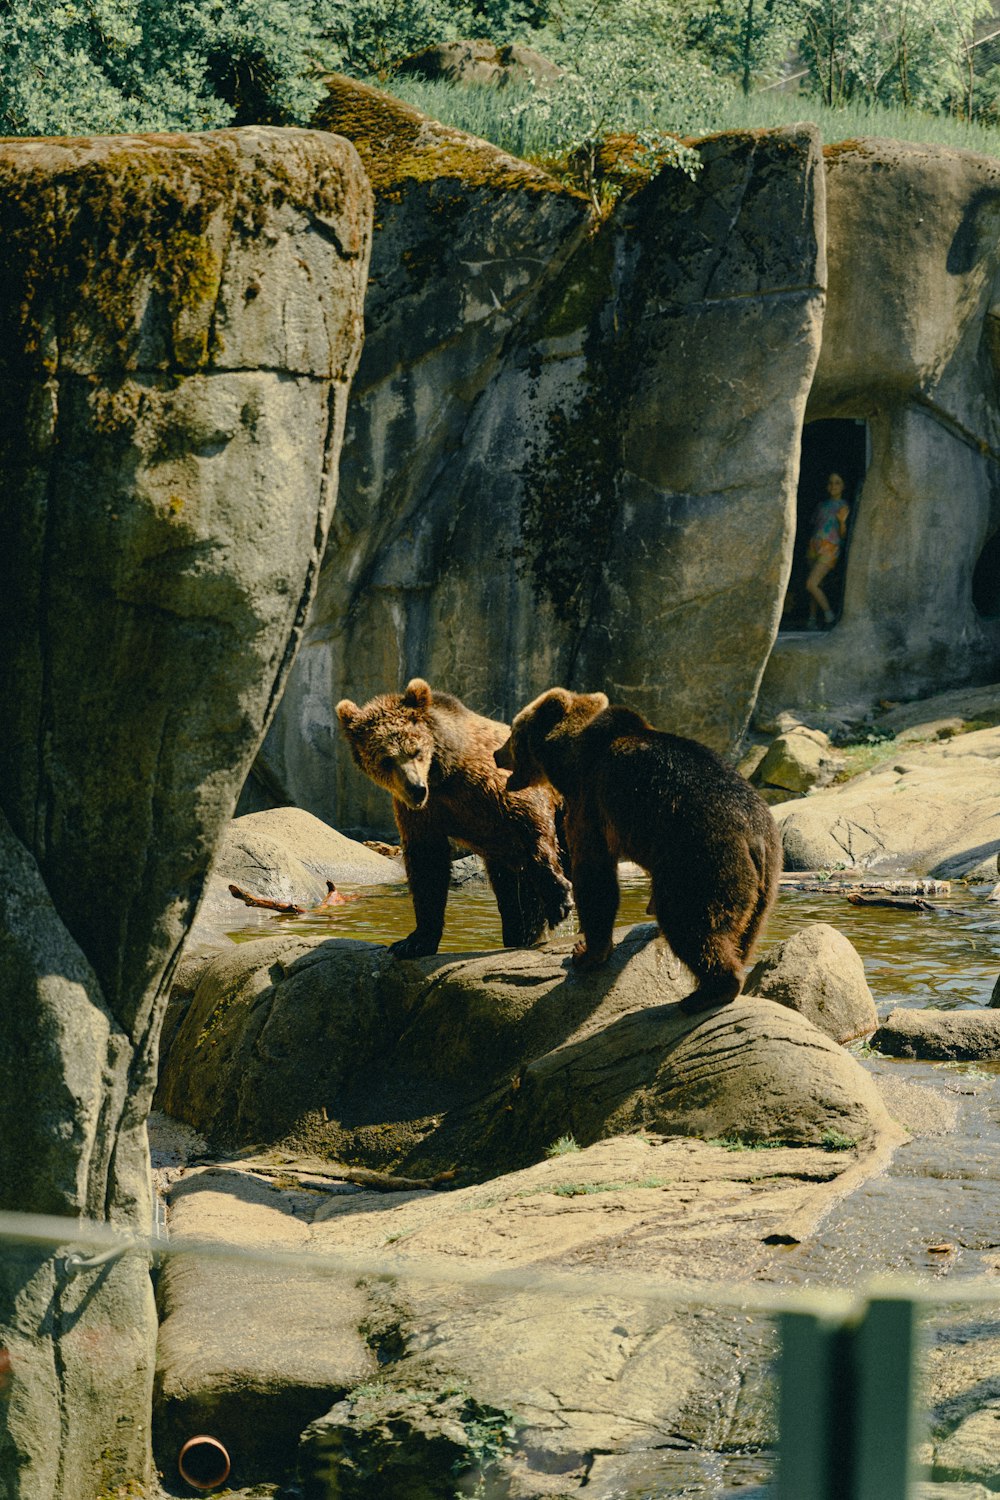 바위 위에 서 있는 곰 두 마리